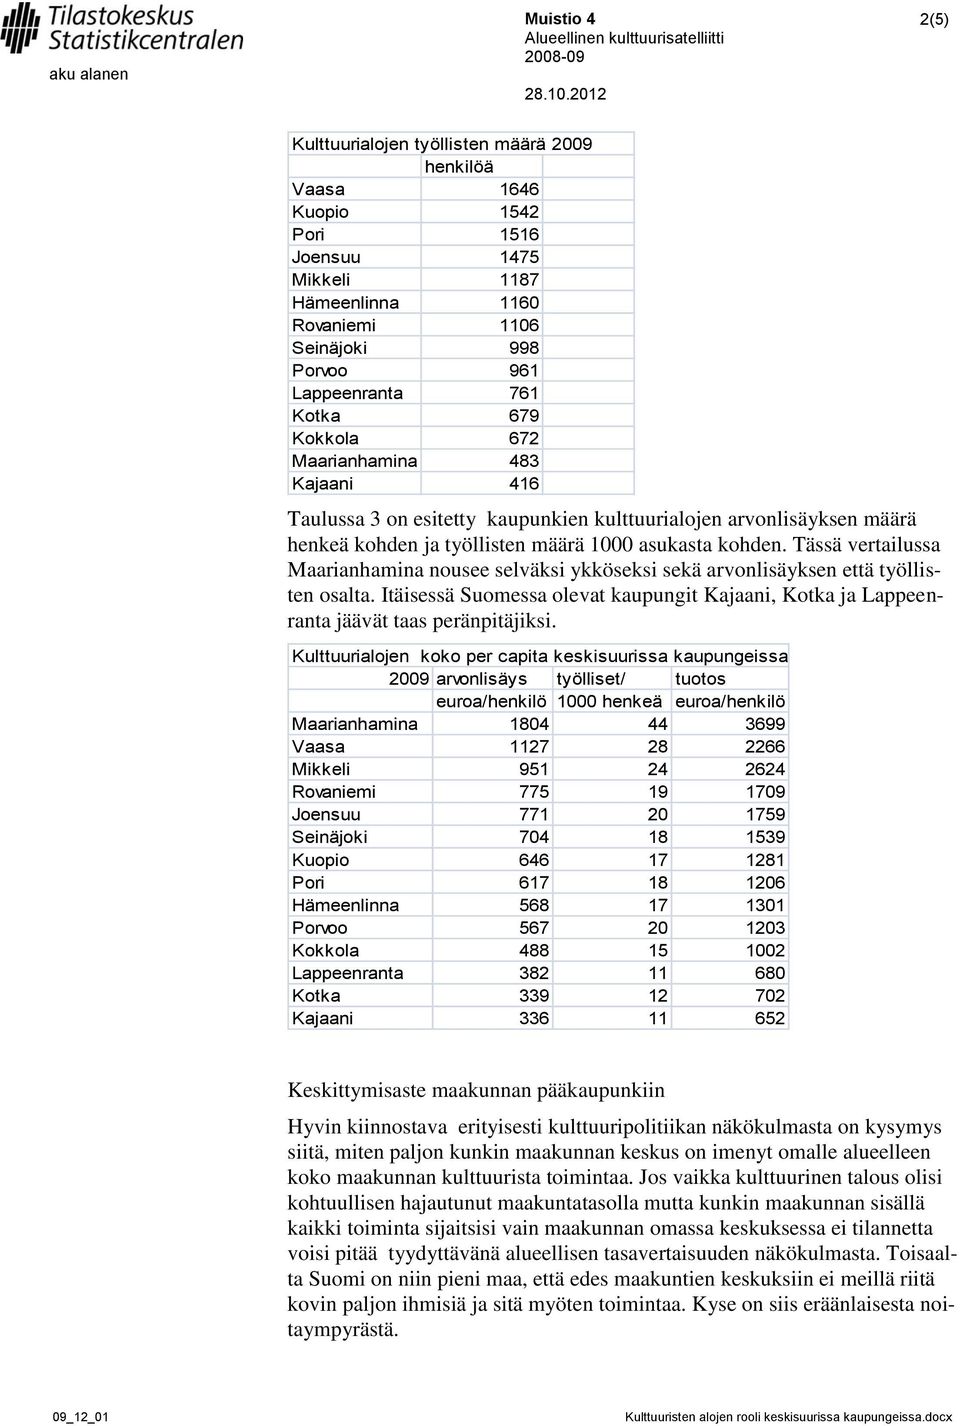 Tässä vertailussa Maarianhamina nousee selväksi ykköseksi sekä arvonlisäyksen että työllisten osalta. Itäisessä Suomessa olevat kaupungit Kajaani, Kotka ja Lappeenranta jäävät taas peränpitäjiksi.